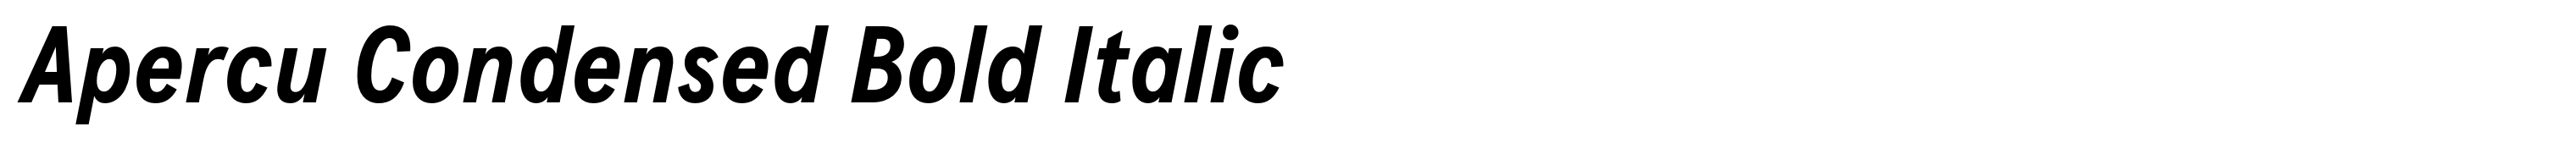 Apercu Condensed Bold Italic